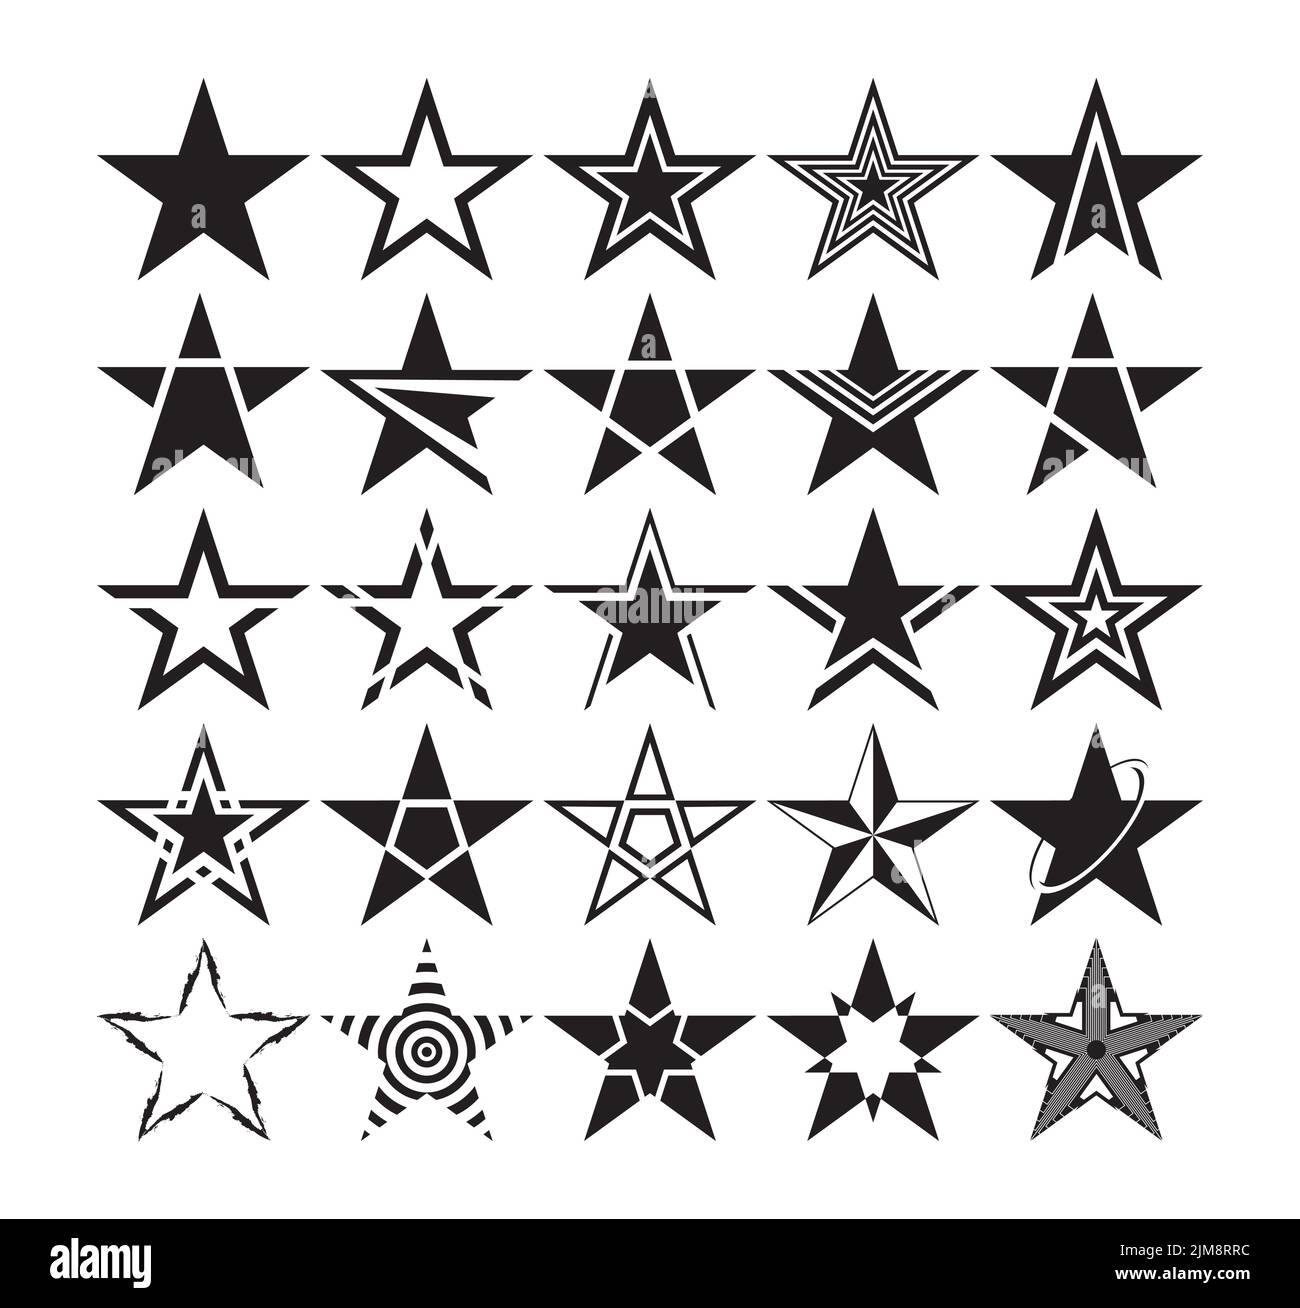 Set aus sternförmigen Silhouetten. Verschiedene Clipart-Zeichnungen mit schwarzen Sternen. Vektorgrafik Stock Vektor